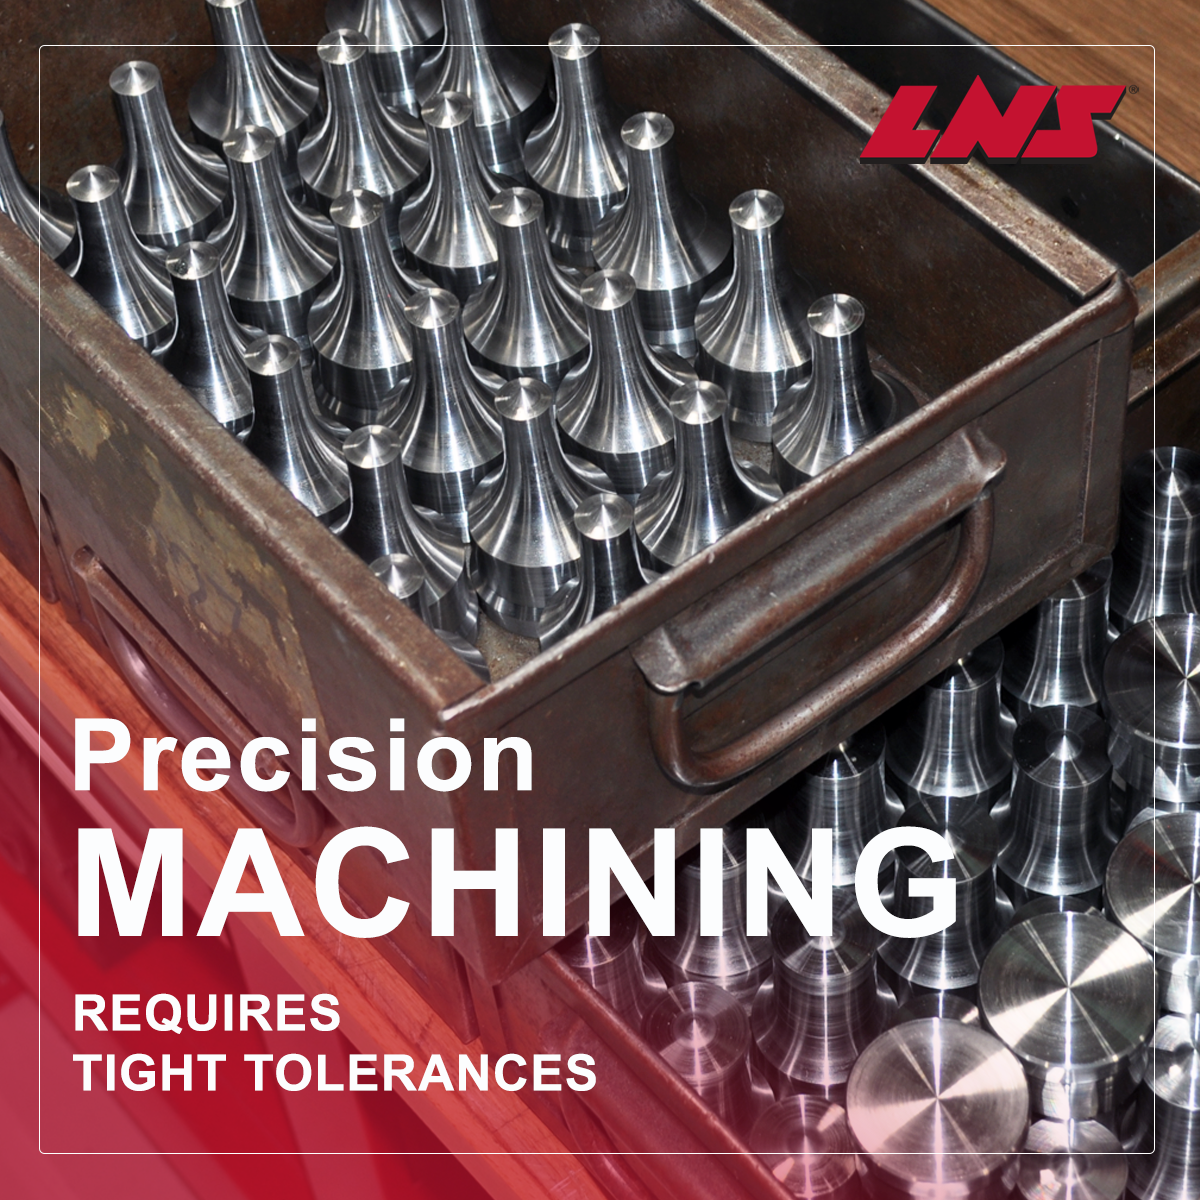 Precision Machining Requires Tight Tolerances